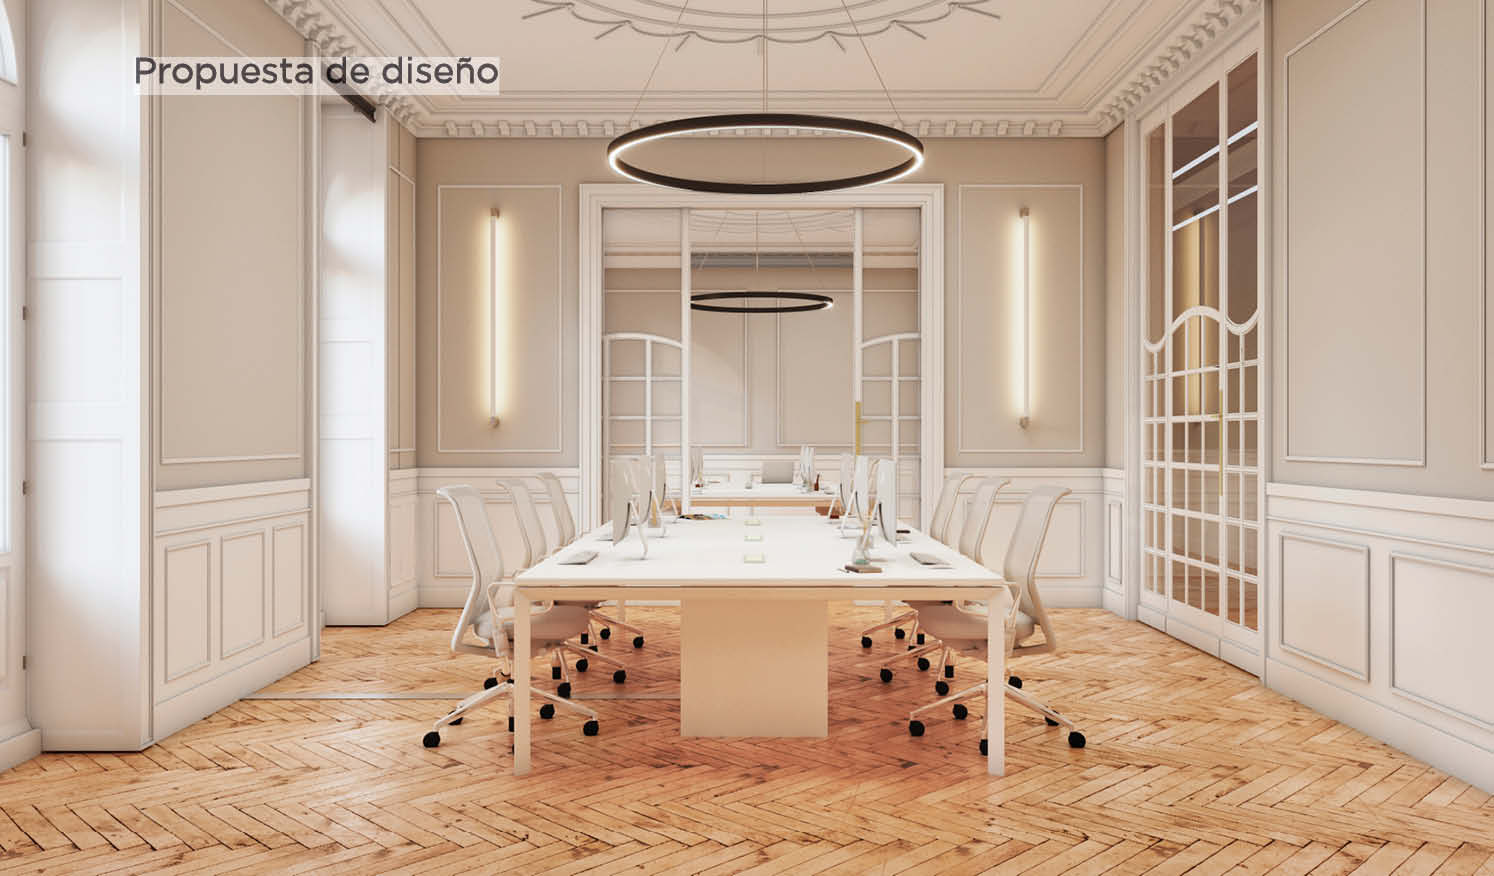 Denodo_Render propuesta de diseño salas de reuniones